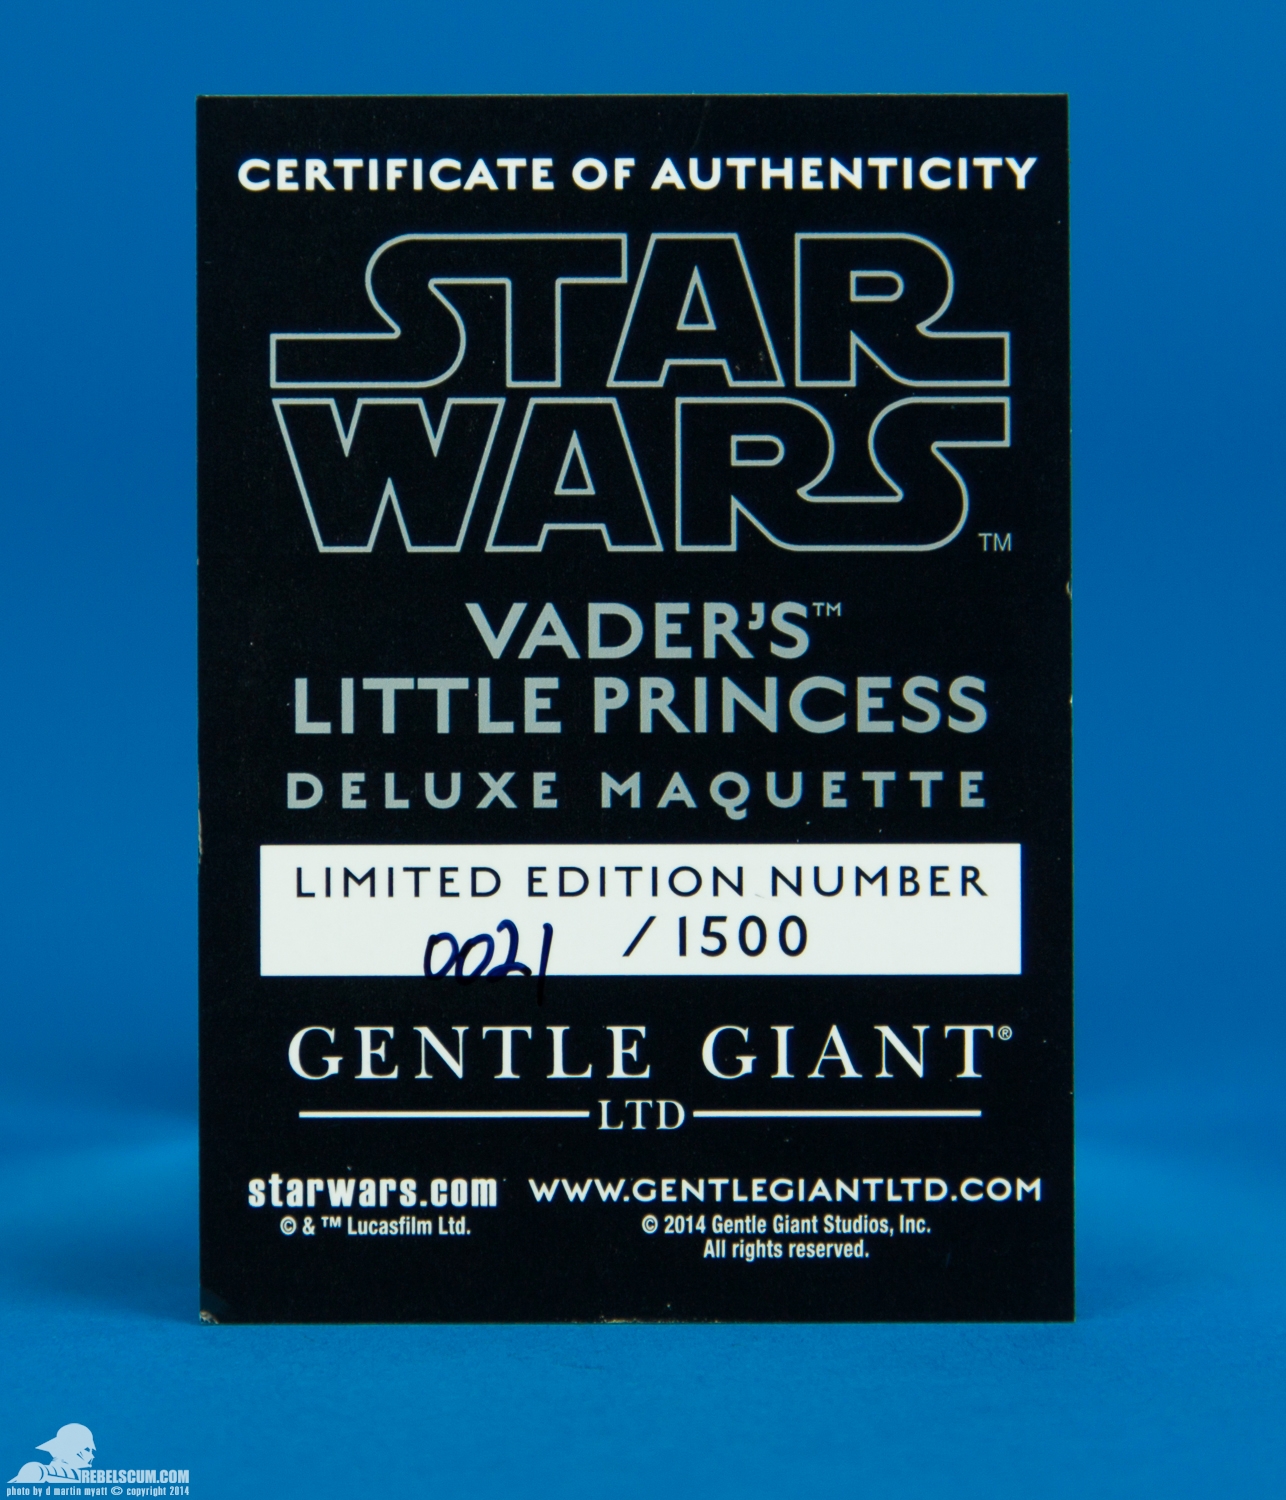 Vaders-Little-Princess-Deluxe-Maquette-Gentle-Giant-Ltd-005.jpg